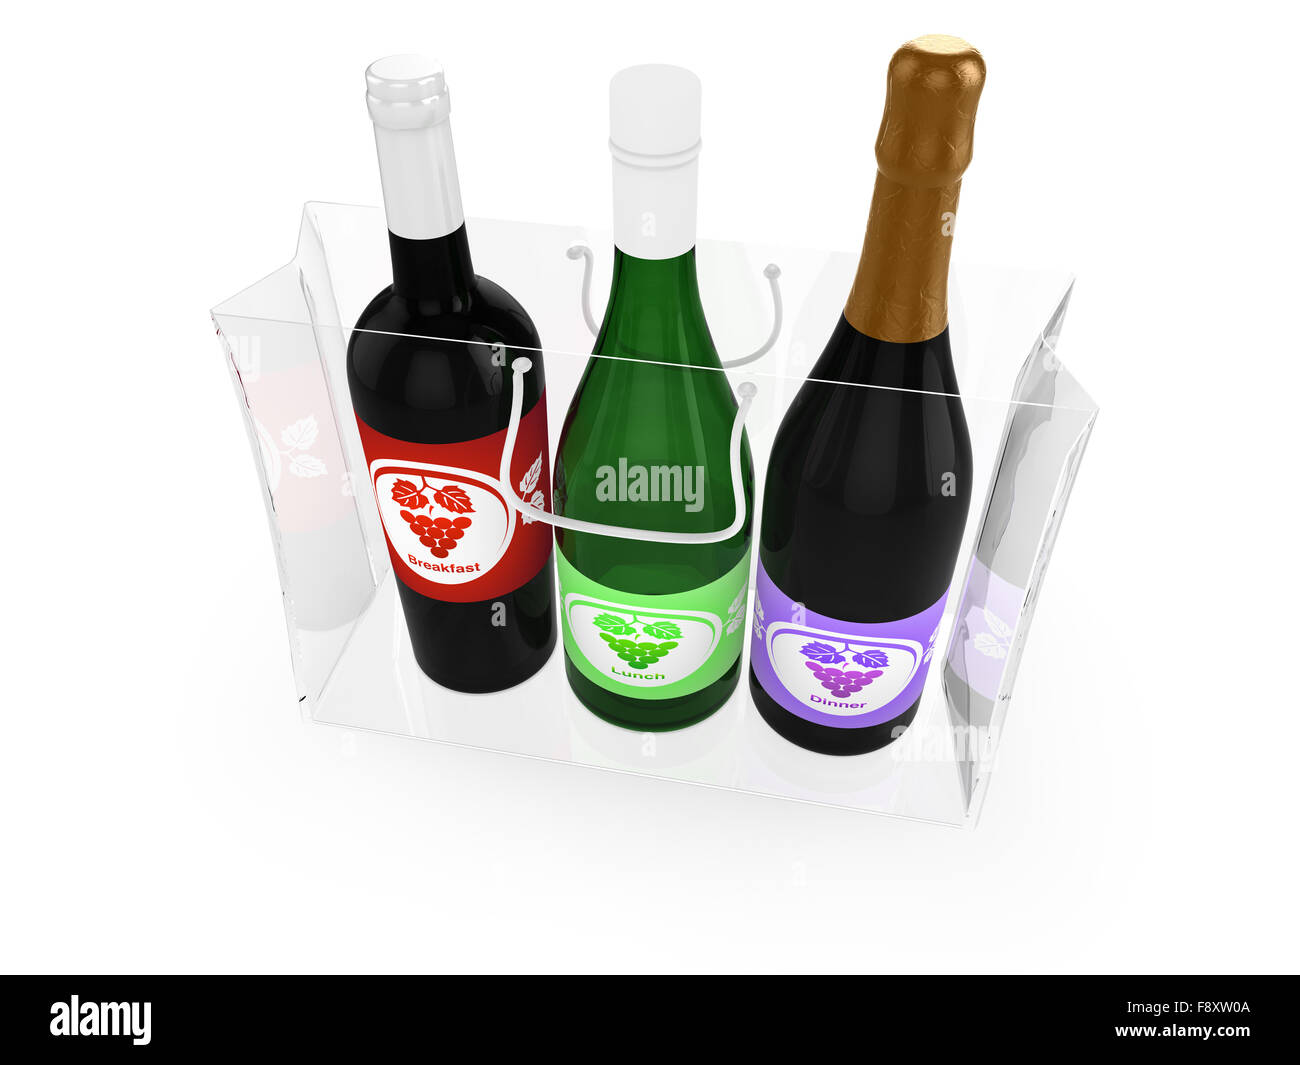 Vino blanco, vino tinto y champagne en una bolsa transparente como concepto para el uso indebido de alcohol Foto de stock